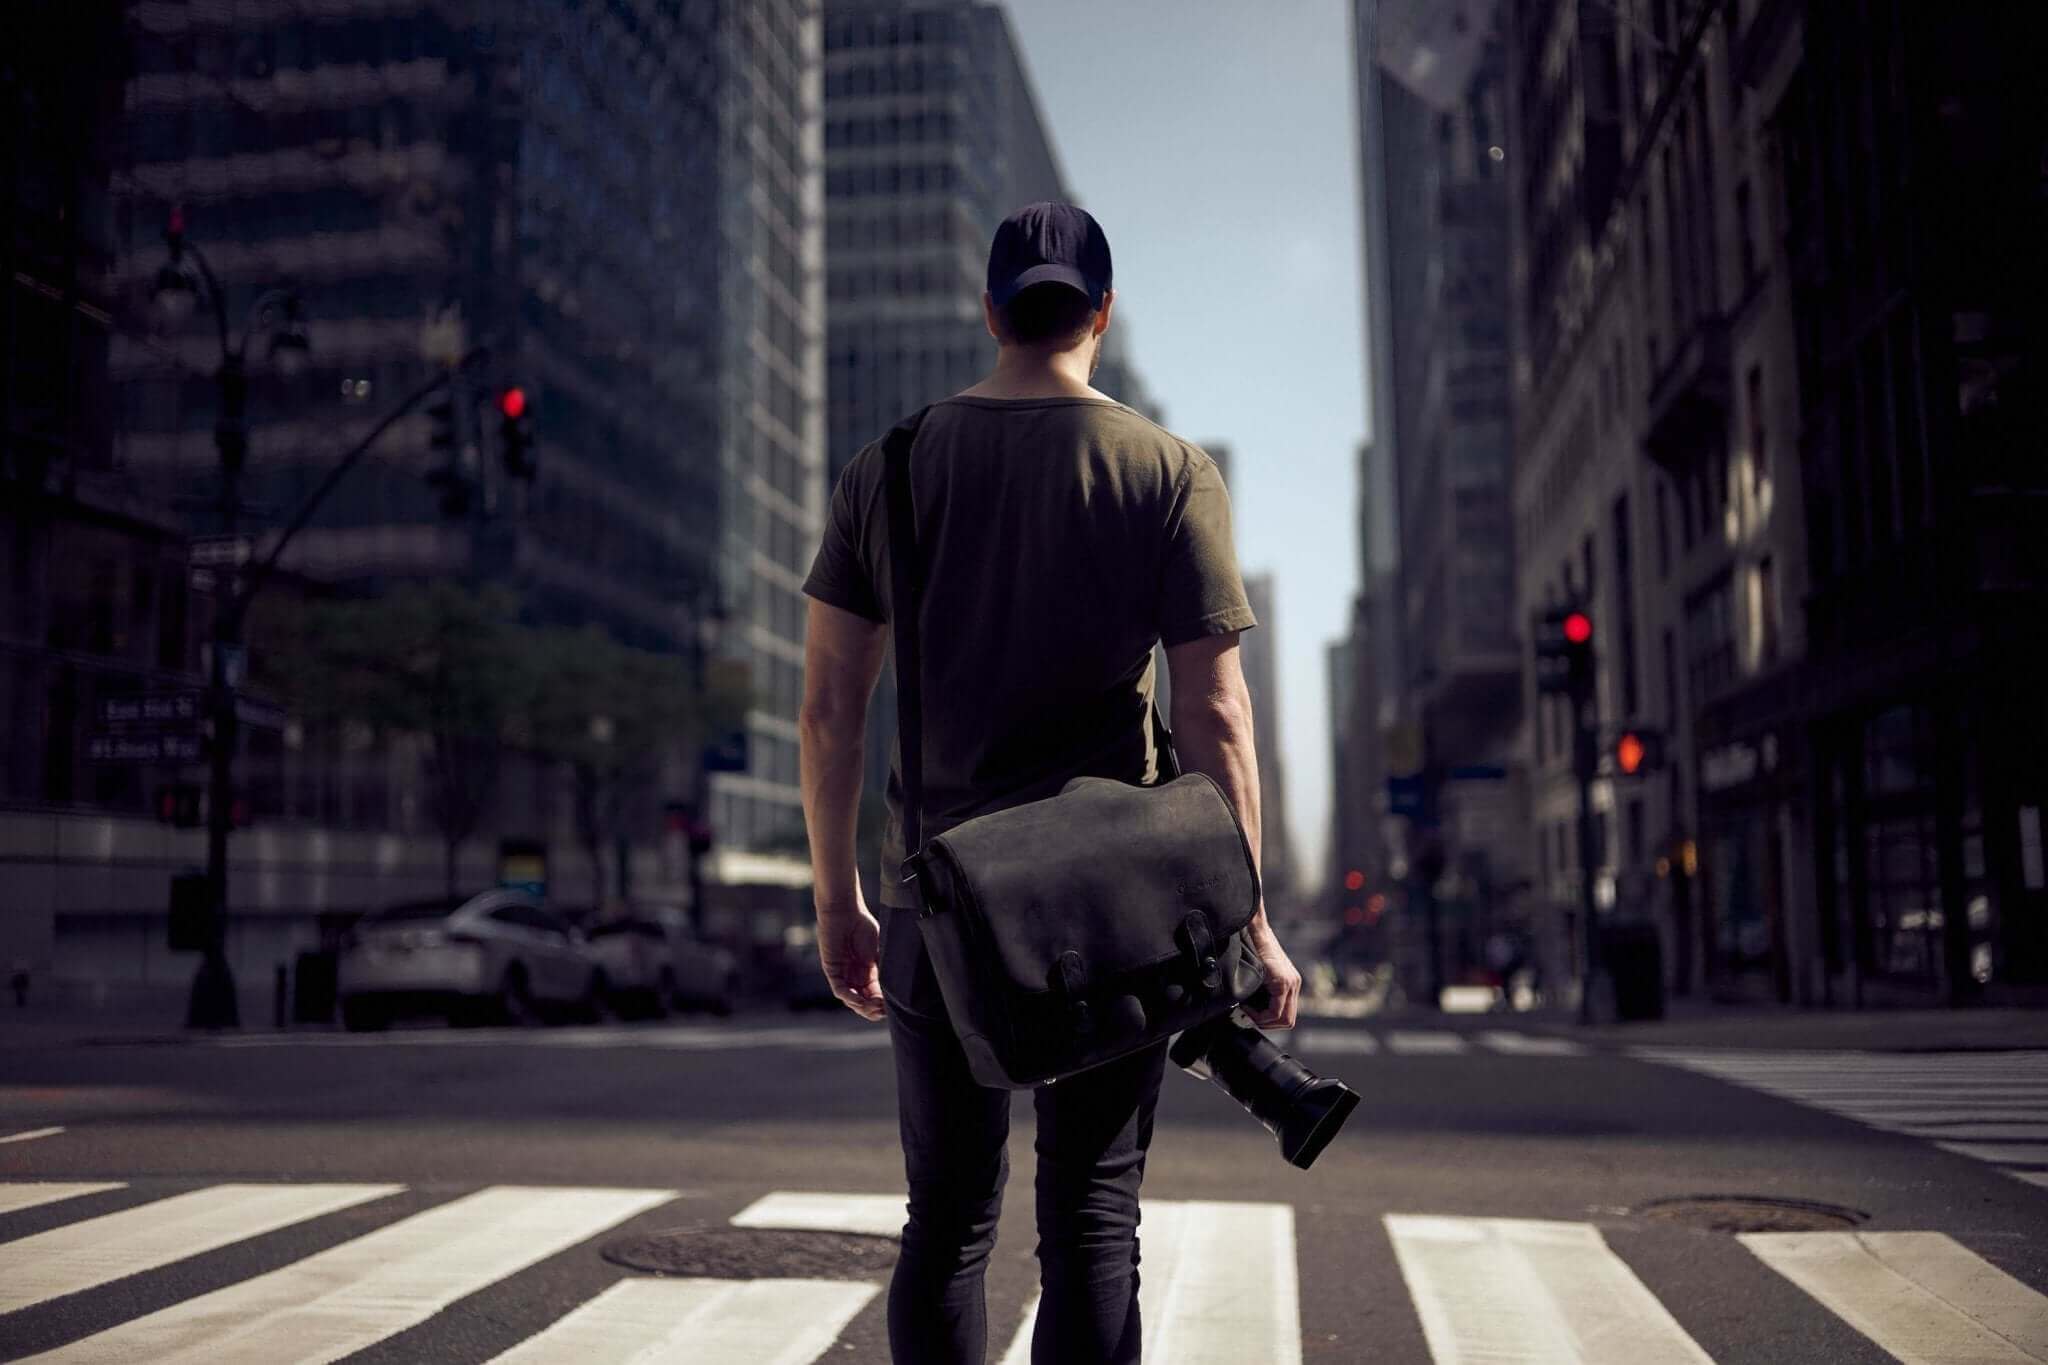 Streetfotografie: Welches ist das beste Objektiv?